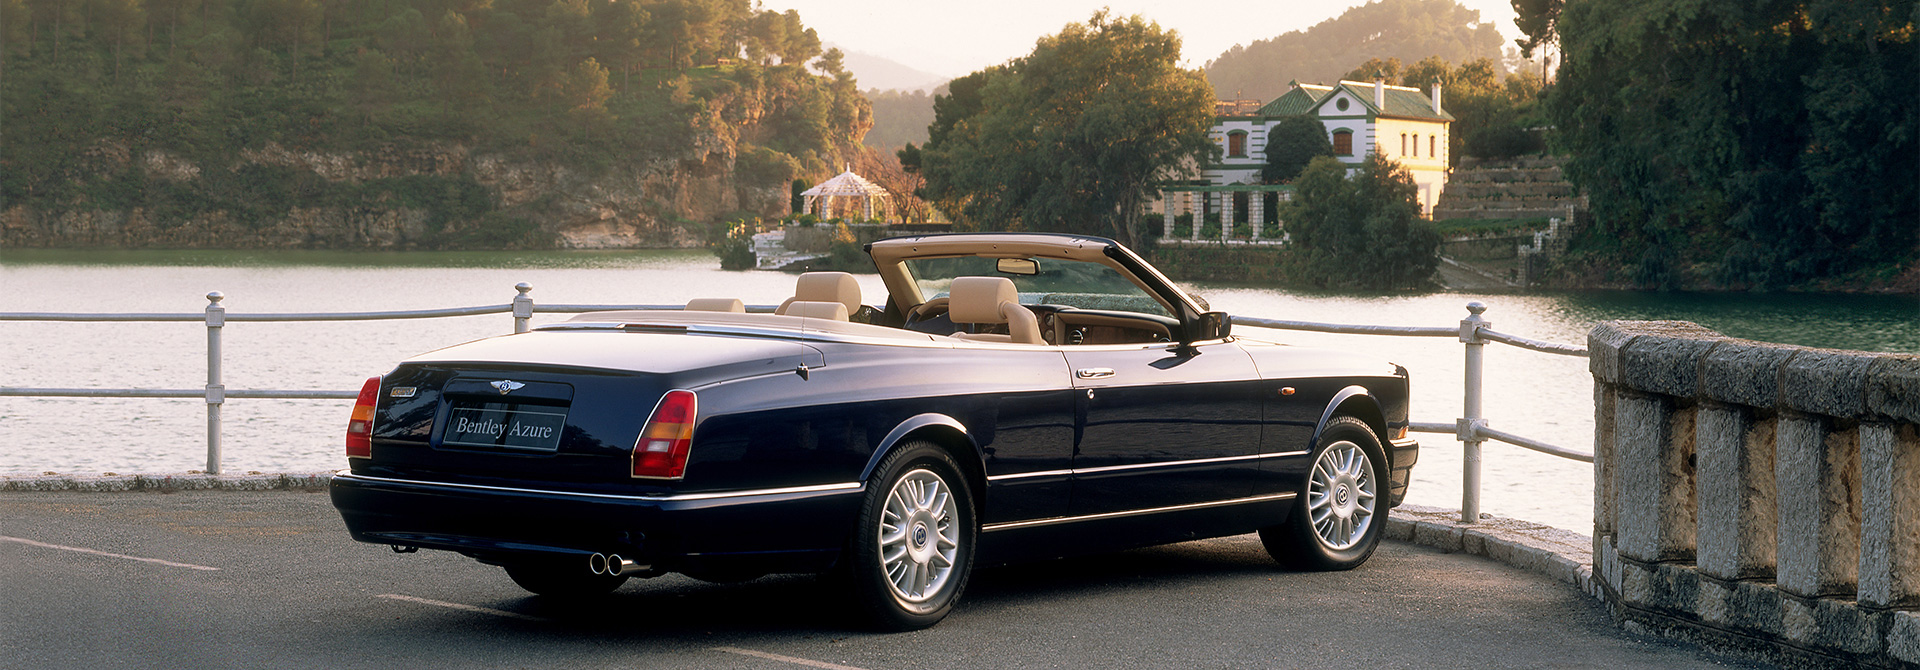 Bentley Motors Website: Models: Past Models: The Azure Range